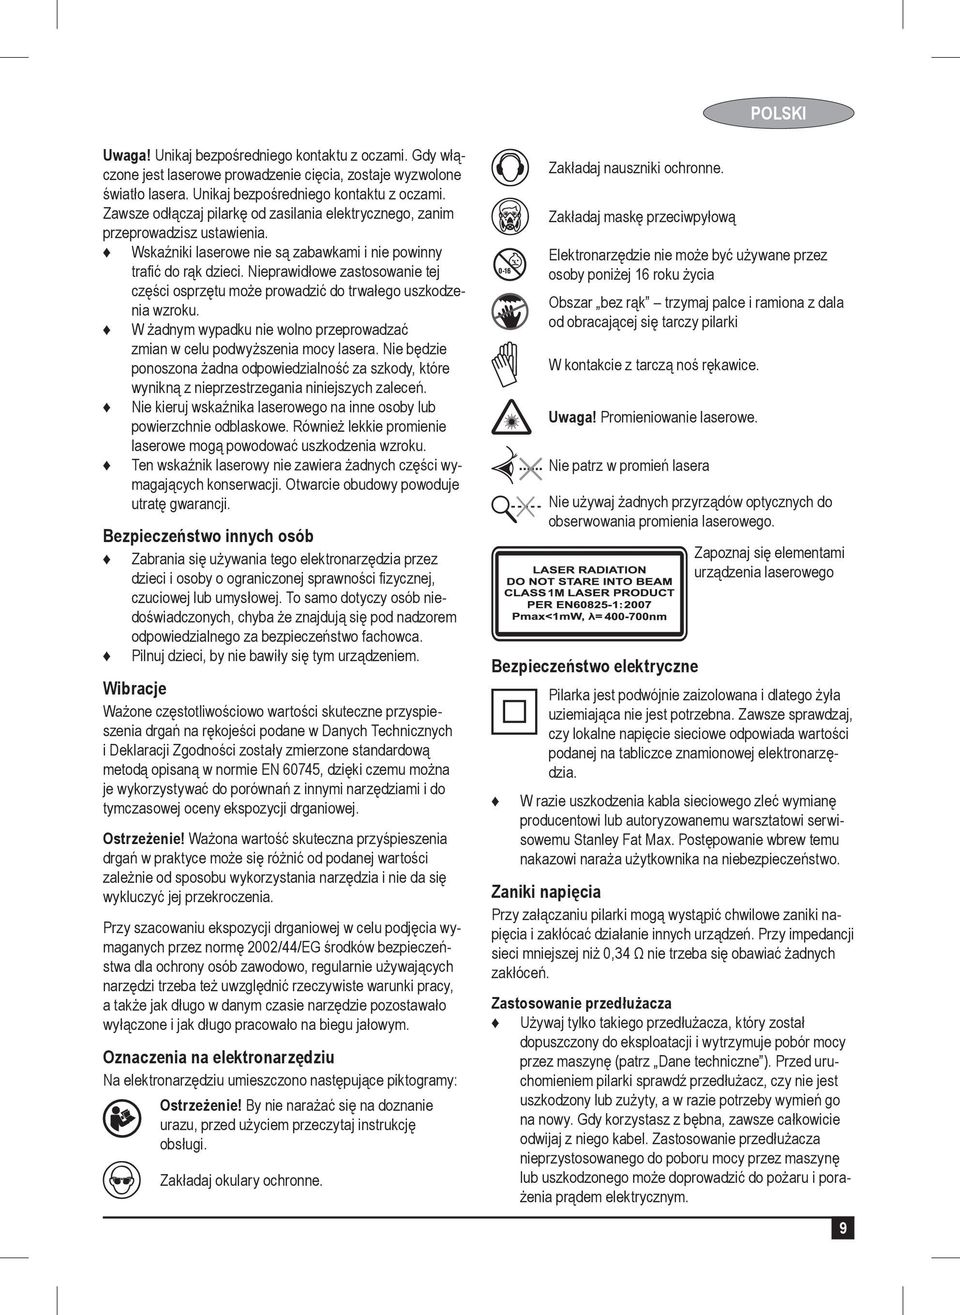 PL. Tłumaczenie oryginalnej instrukcji FME720 - PDF Free Download